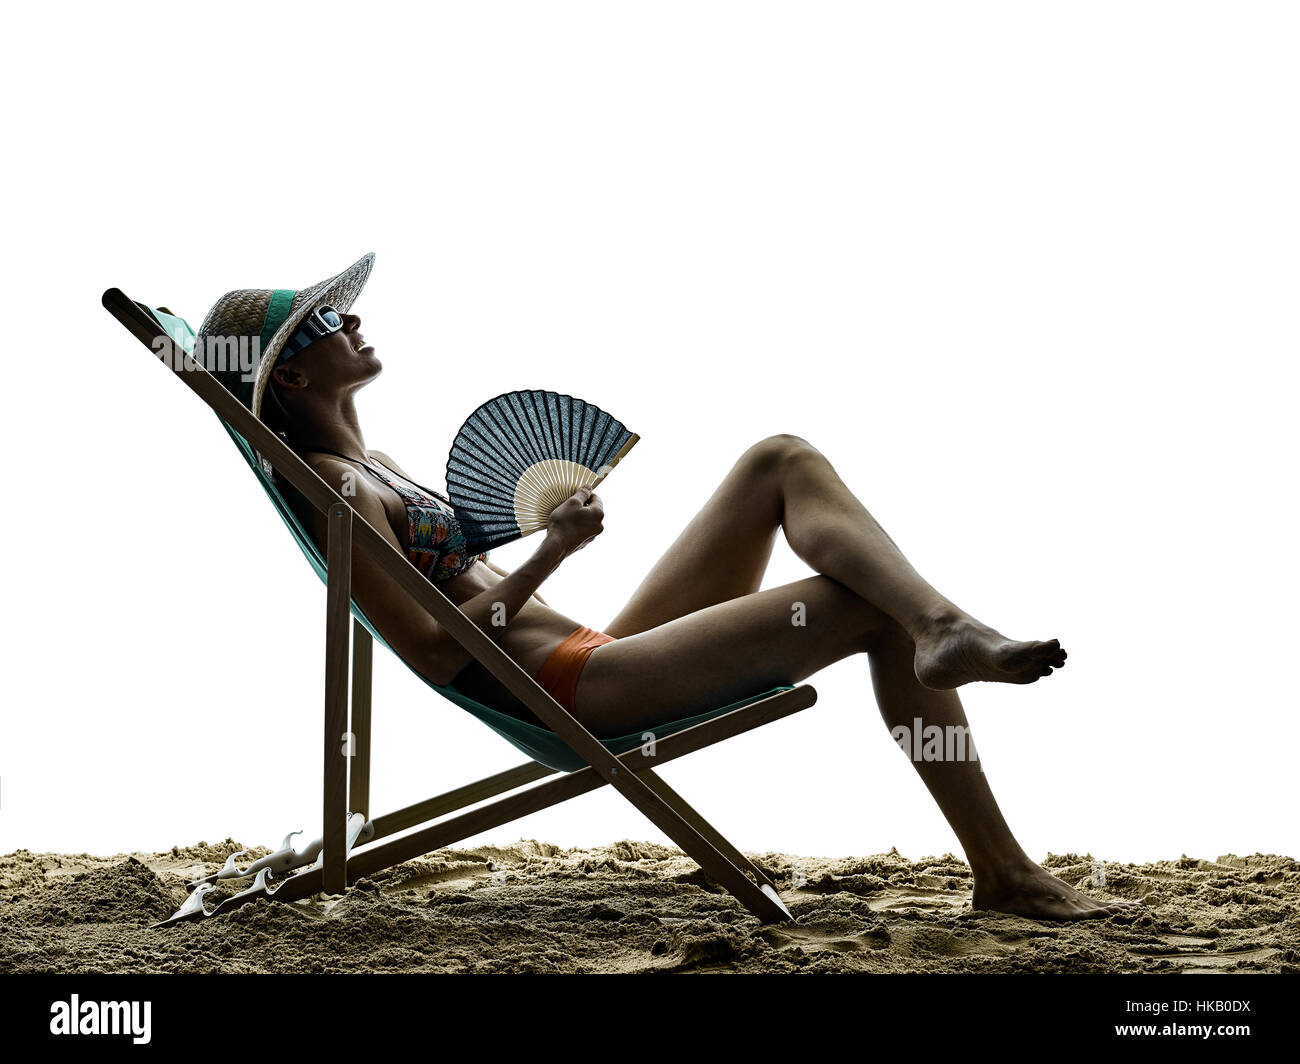 Frau am Strand Meer Sonne Urlaub Ferien Silhouette isoliert auf weißem Hintergrund Stockfoto